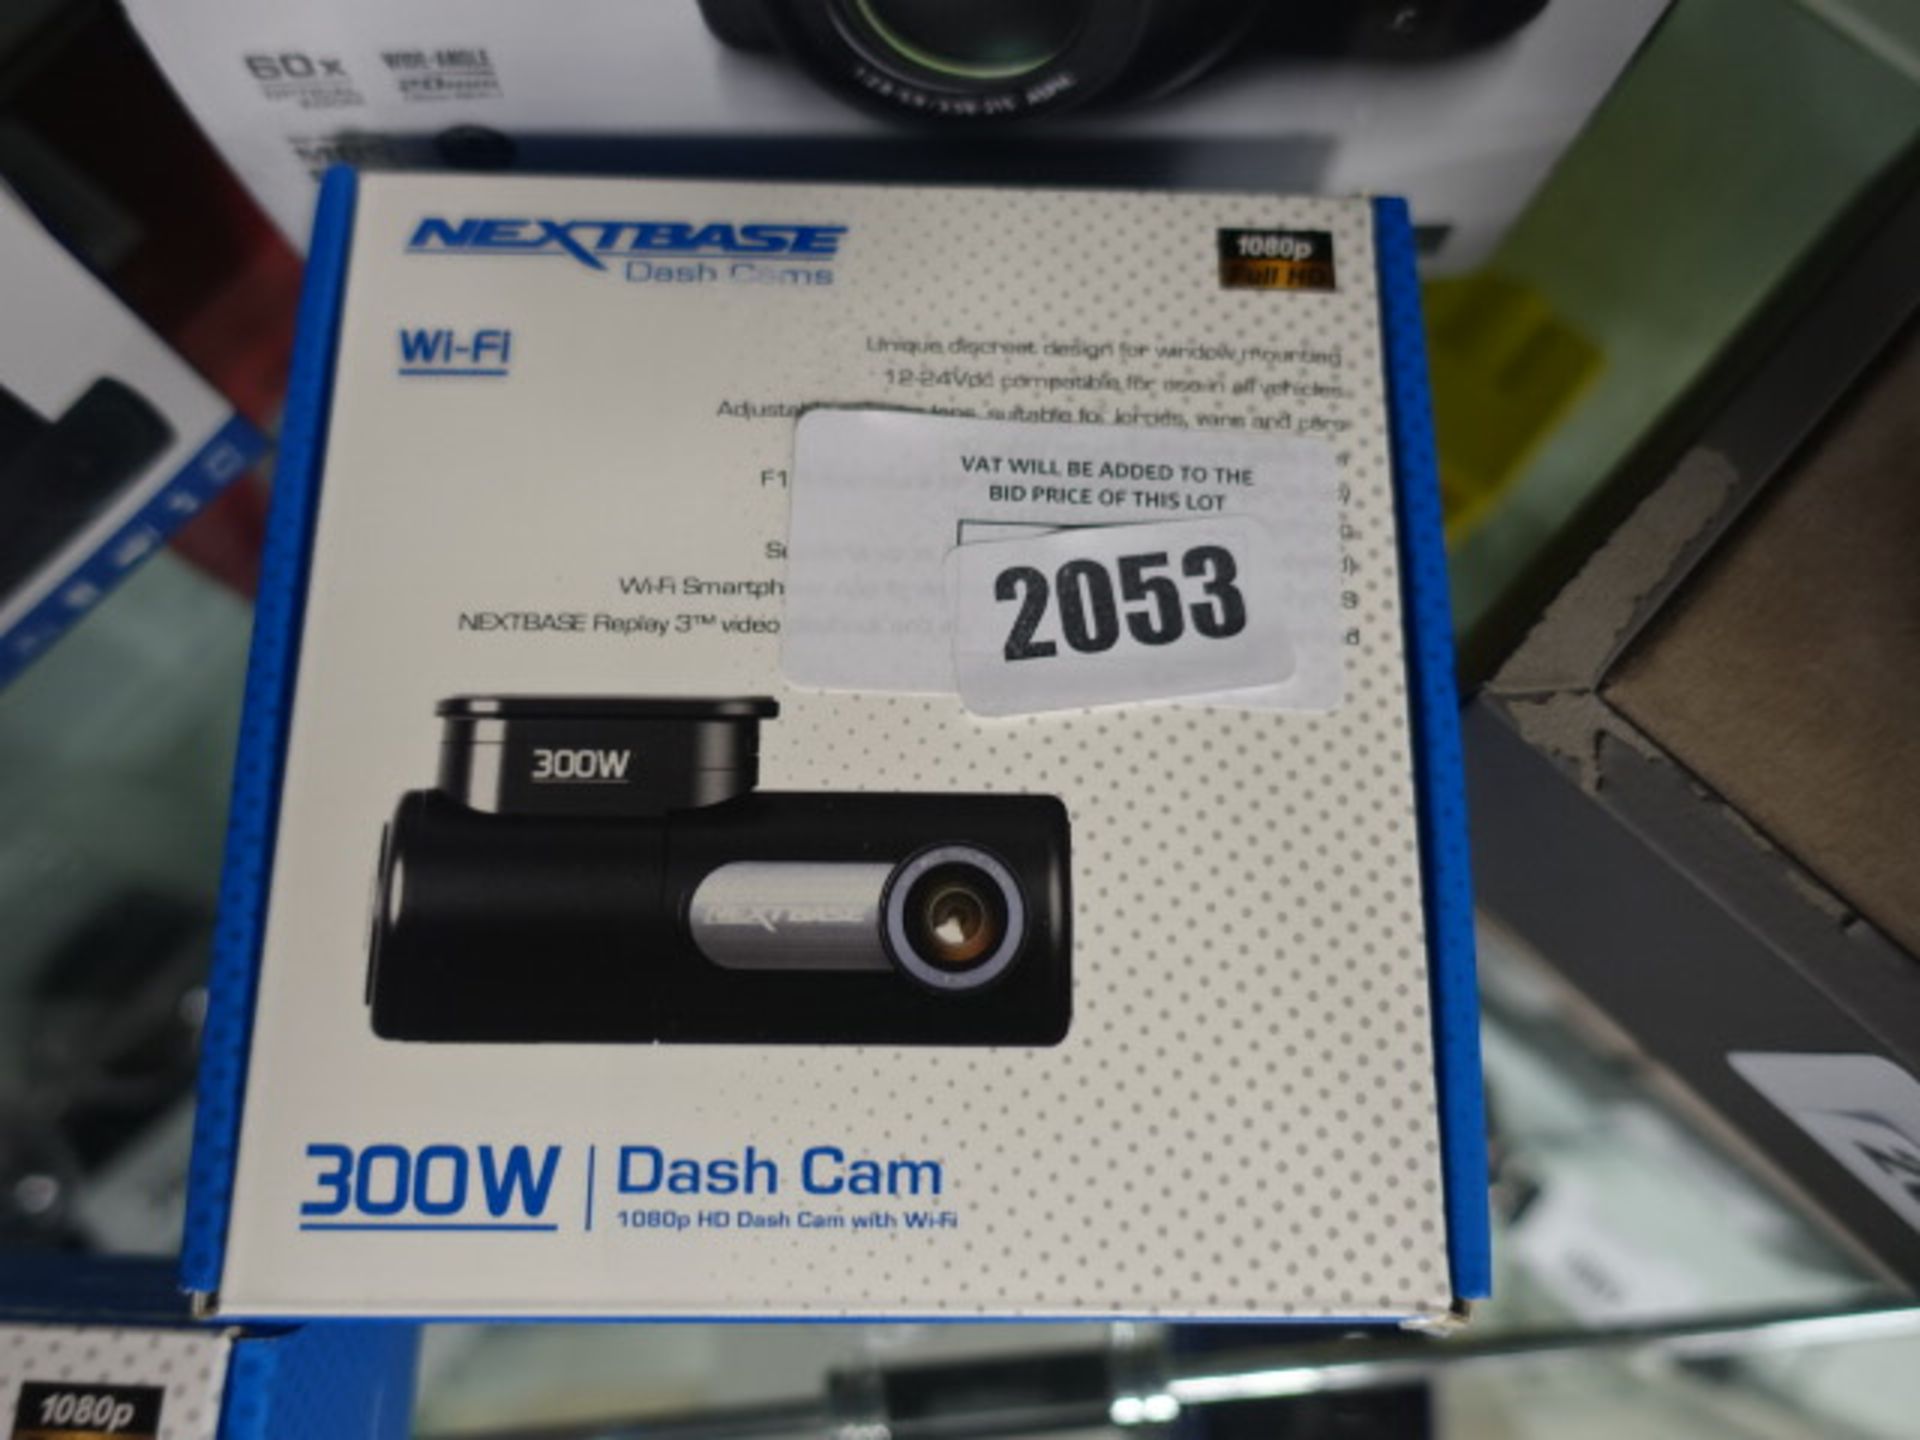 Nexbase wifi model 300W dashcam with box